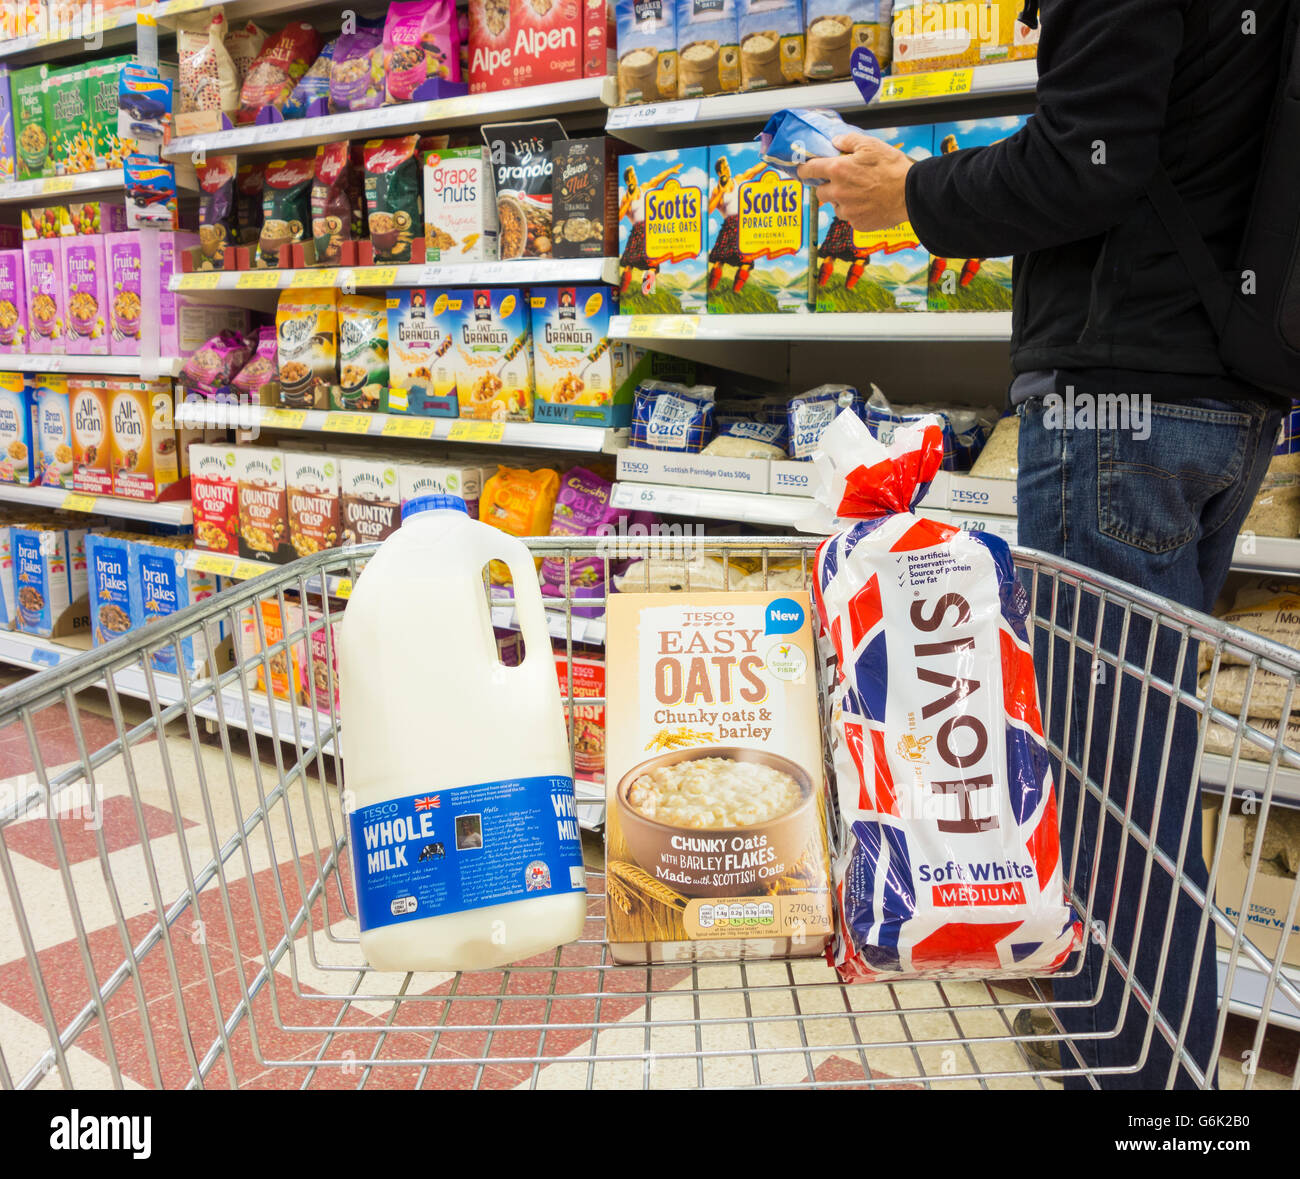 Uomo con latte, pane e porridge avena nel carrello della spesa al supermercato Tesco. REGNO UNITO. Aumento dei prezzi alimentari... Foto Stock